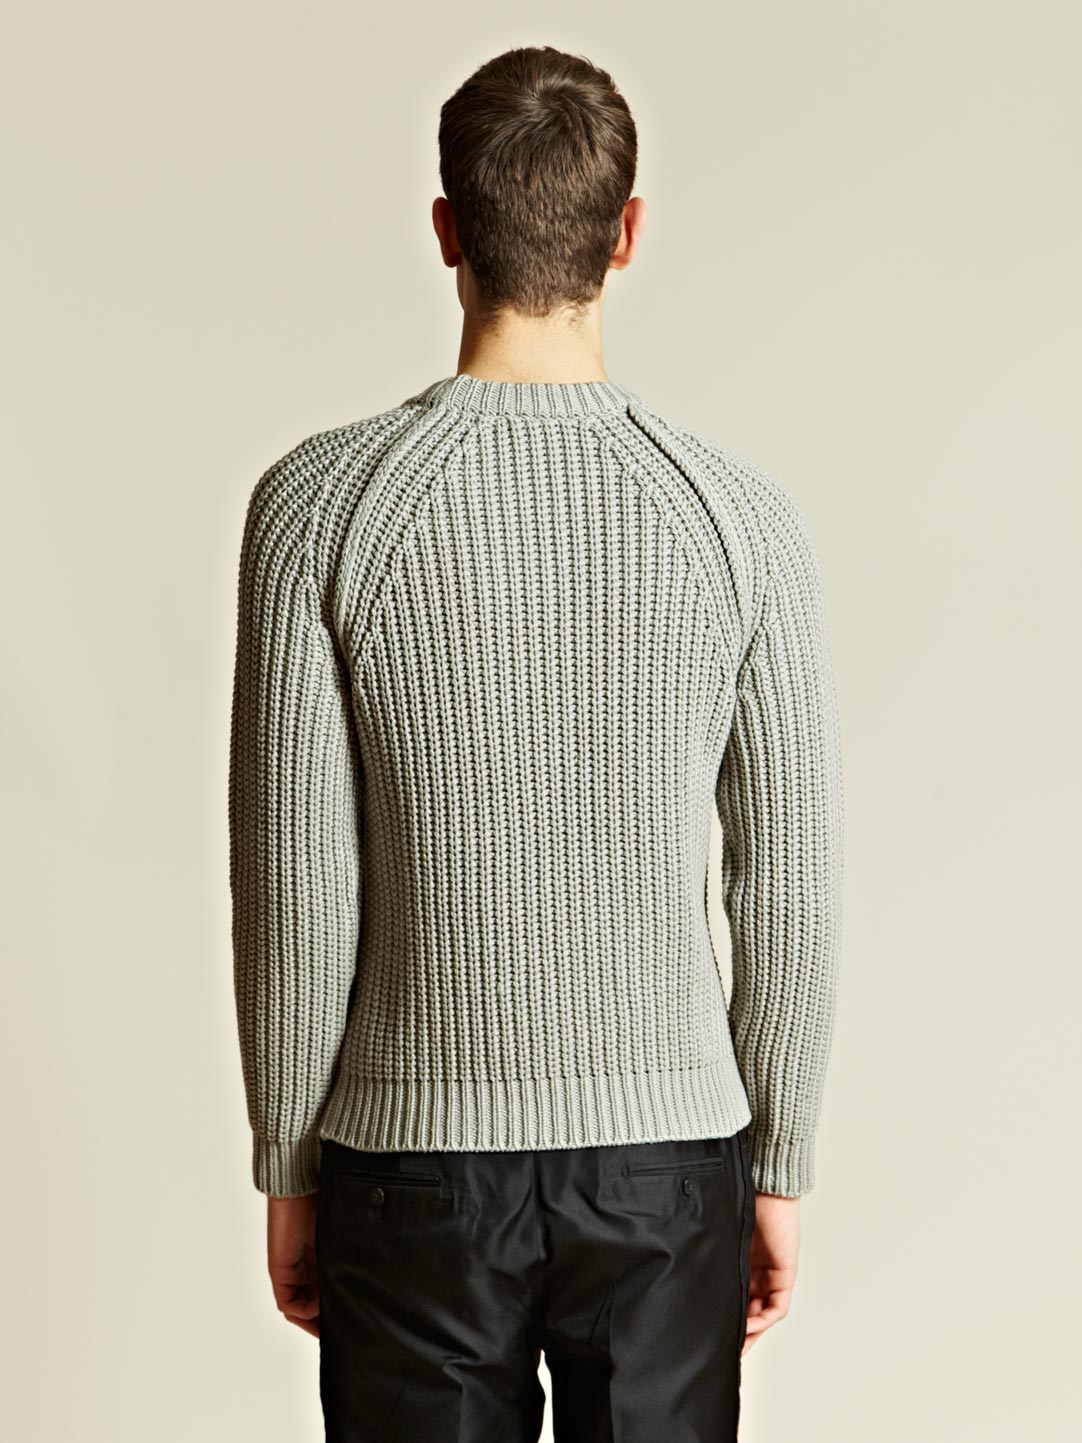 Lanvin Lanvin Mens Knitted Rib Jumper in Grey (Gray) for Men - Lyst